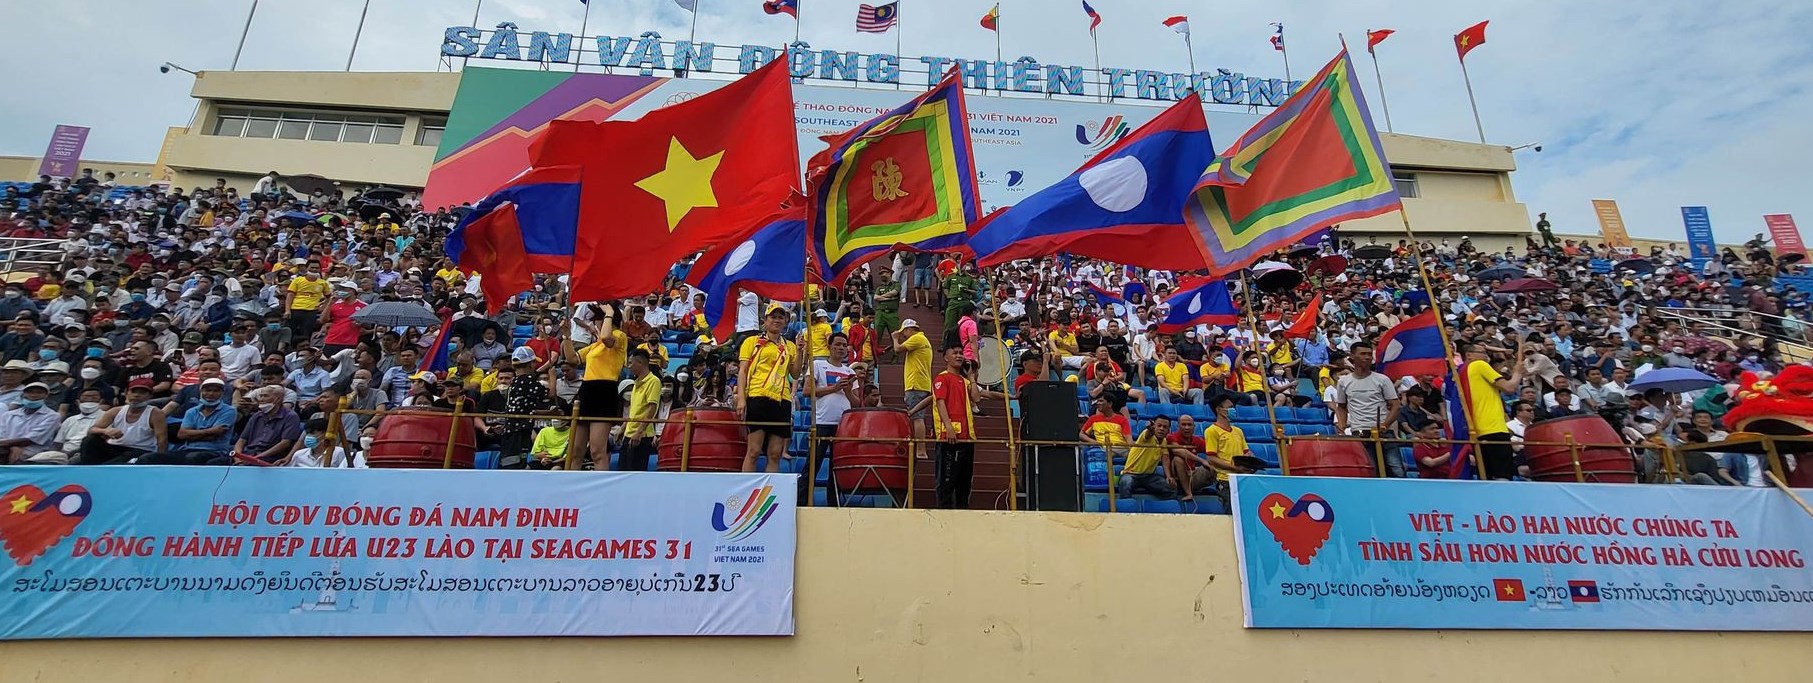 Thể thao và văn hóa luôn là một trong những lĩnh vực hợp tác đặc biệt giữa Việt Nam và Lào. Năm 2024, sự hợp tác này sẽ tiếp tục được đẩy mạnh với nhiều hoạt động đa dạng như trao đổi nghệ thuật, đội tuyển thể thao chung và sự kiện văn hóa. Điều này giúp tăng cường quan hệ, xây dựng sự hiểu biết giữa các dân tộc và đem lại niềm vui cho người dân cả hai nước.